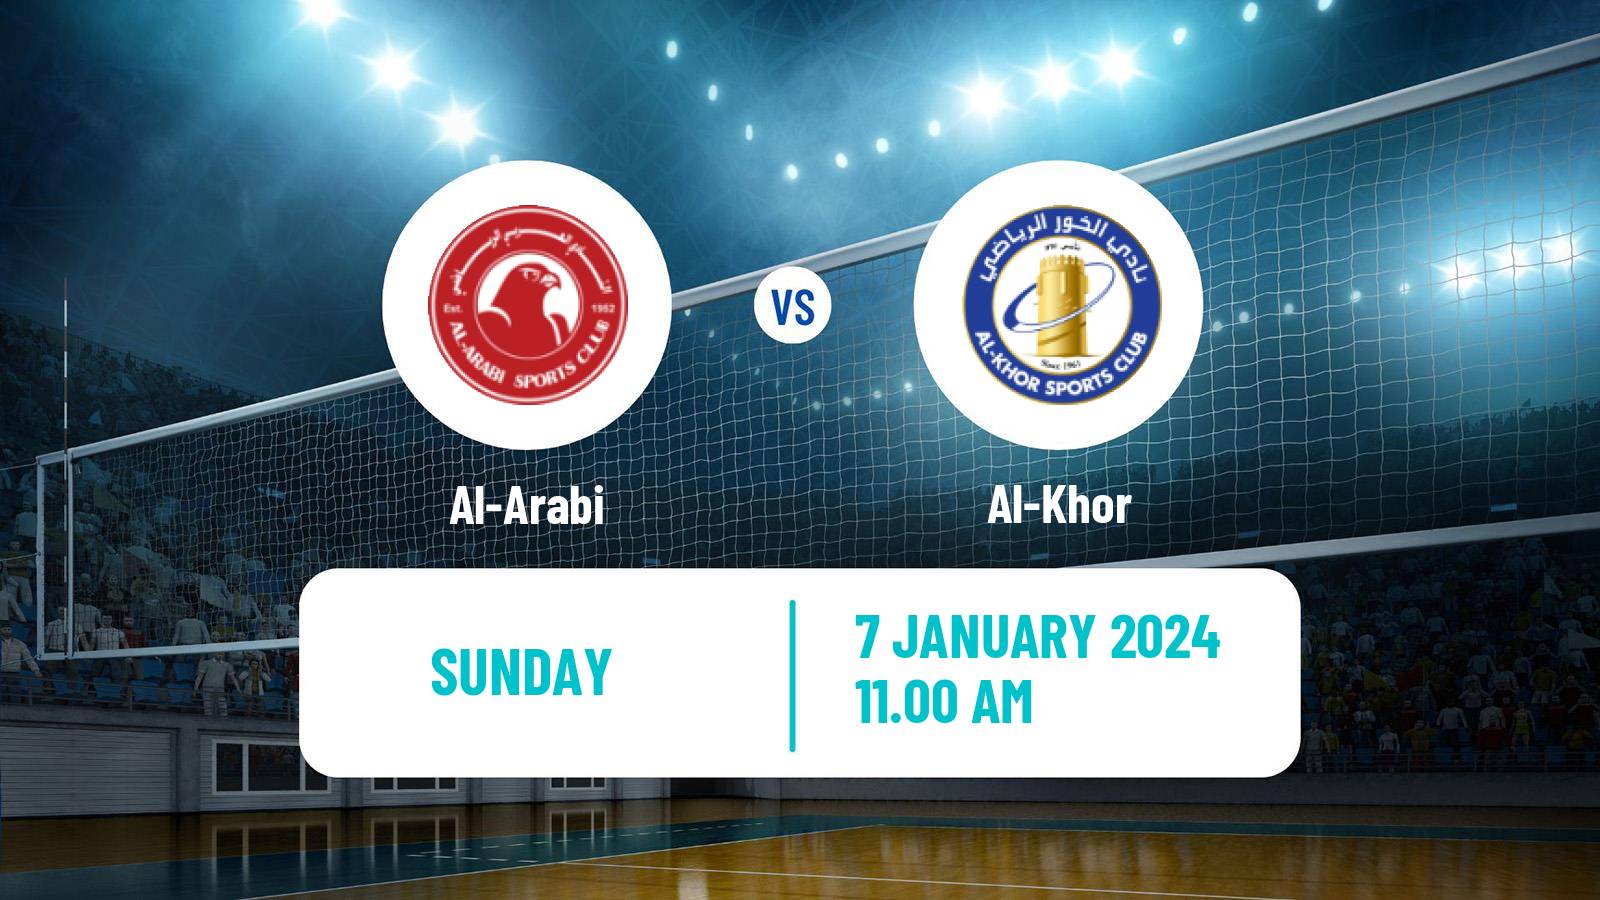 Volleyball Qatar Volleyball League Al-Arabi - Al-Khor